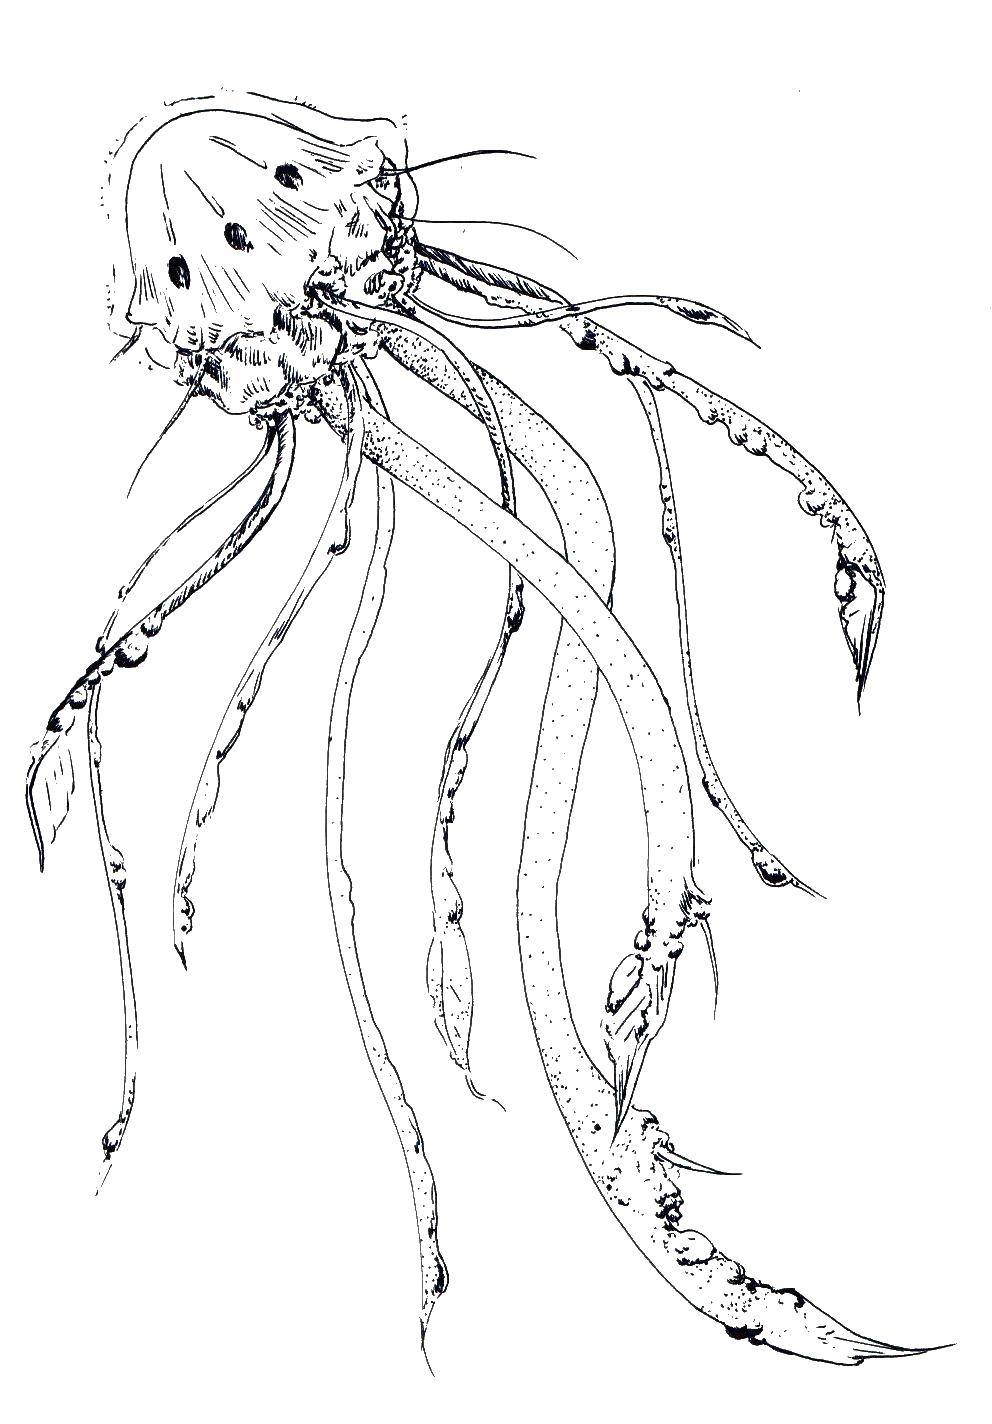   Страшная медуза